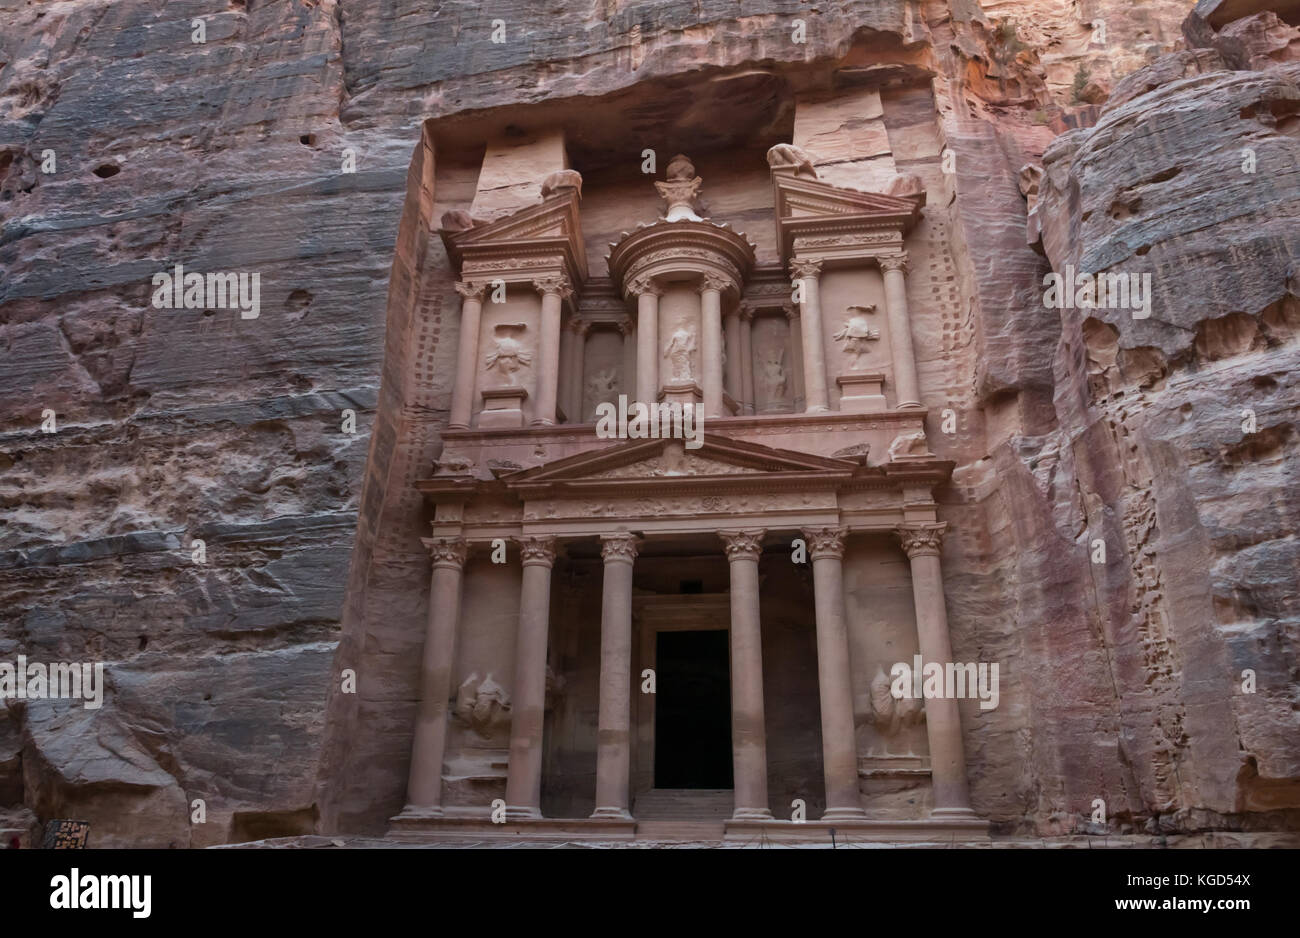 Geschnitzte Felsen aus rosa Sandstein, die Schatzkammer, oder Al Khazneh, Nabatäische grabkunst Grab, Petra, Jordanien, Naher Osten Stockfoto